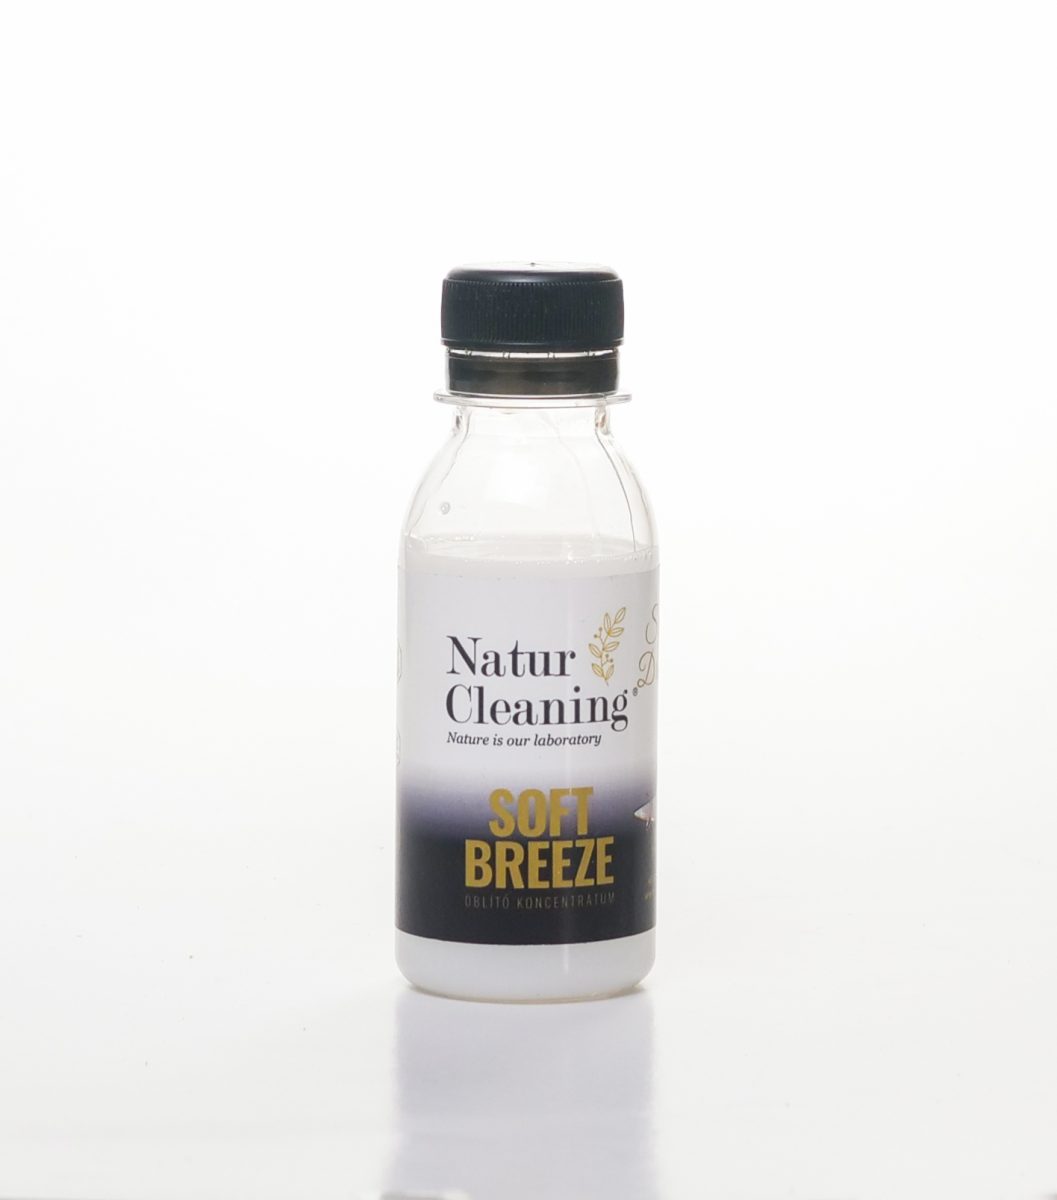 Naturcleaning Sweet Dreams öblítő koncentrátum-kellemes illat szárítógép után is termékminta 100 ml